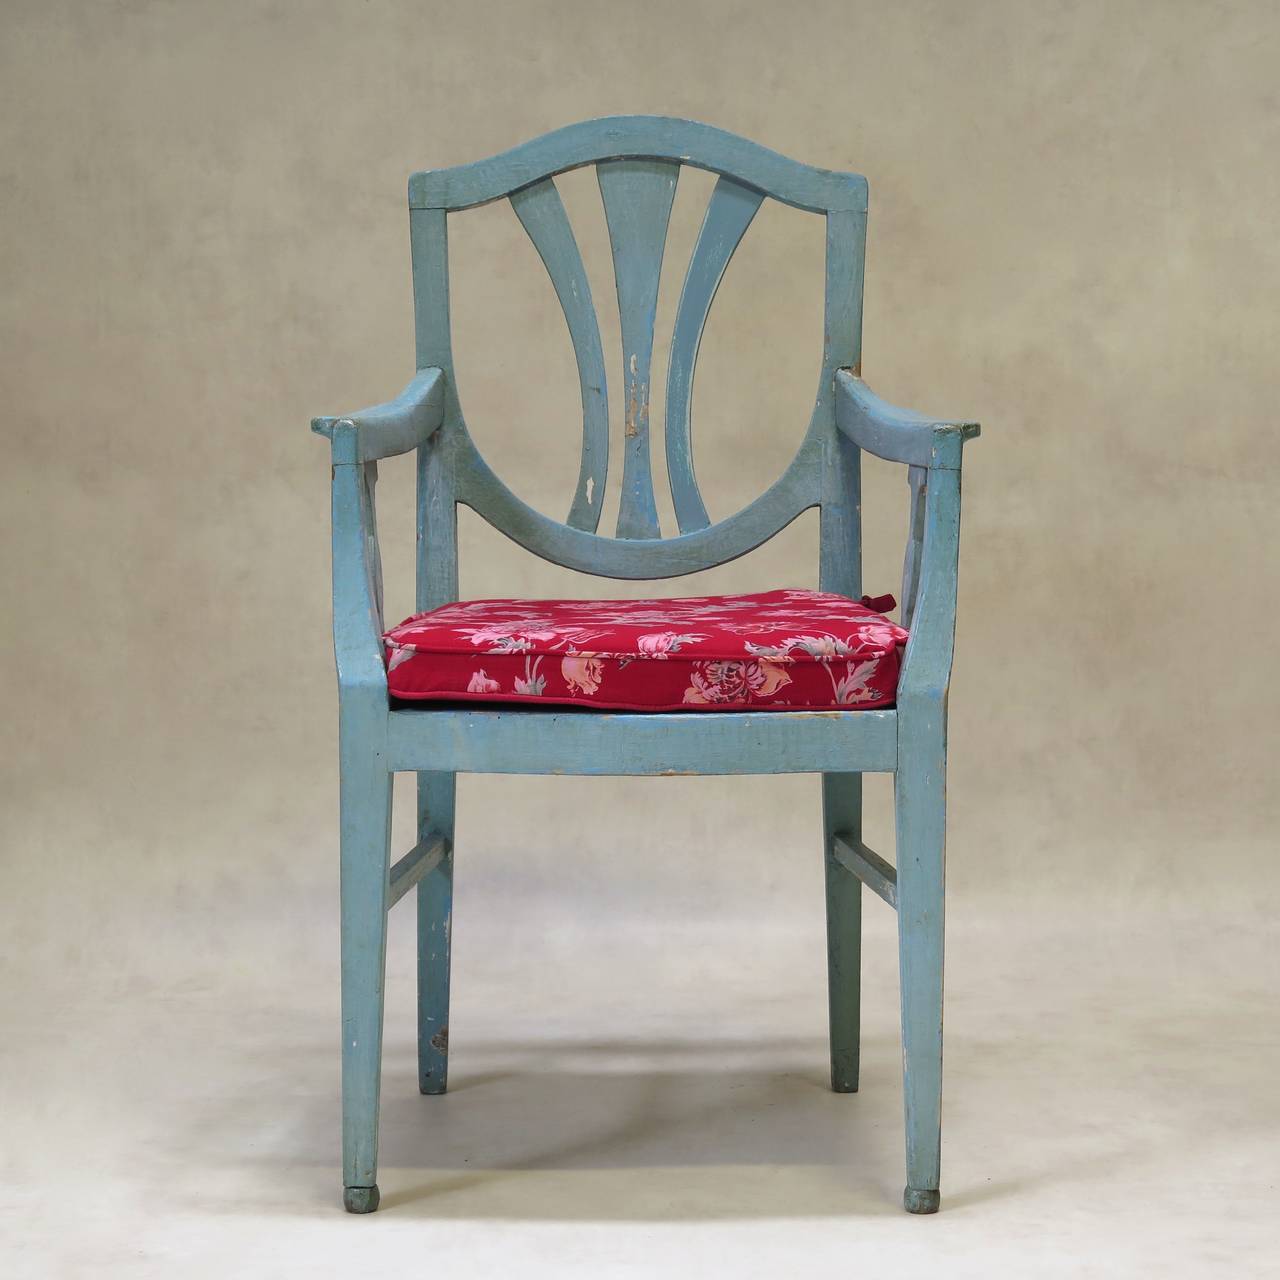 Charmantes Set aus zwei Stühlen und zwei Sesseln mit schildförmiger Rückenlehne, rotkehlchenblau lackiert. Die Vorderbeine enden in Kugelfüßen. Die Sitzkissen sind mit einem schönen bedruckten Baumwollstoff mit Blumenmuster auf rotem Hintergrund